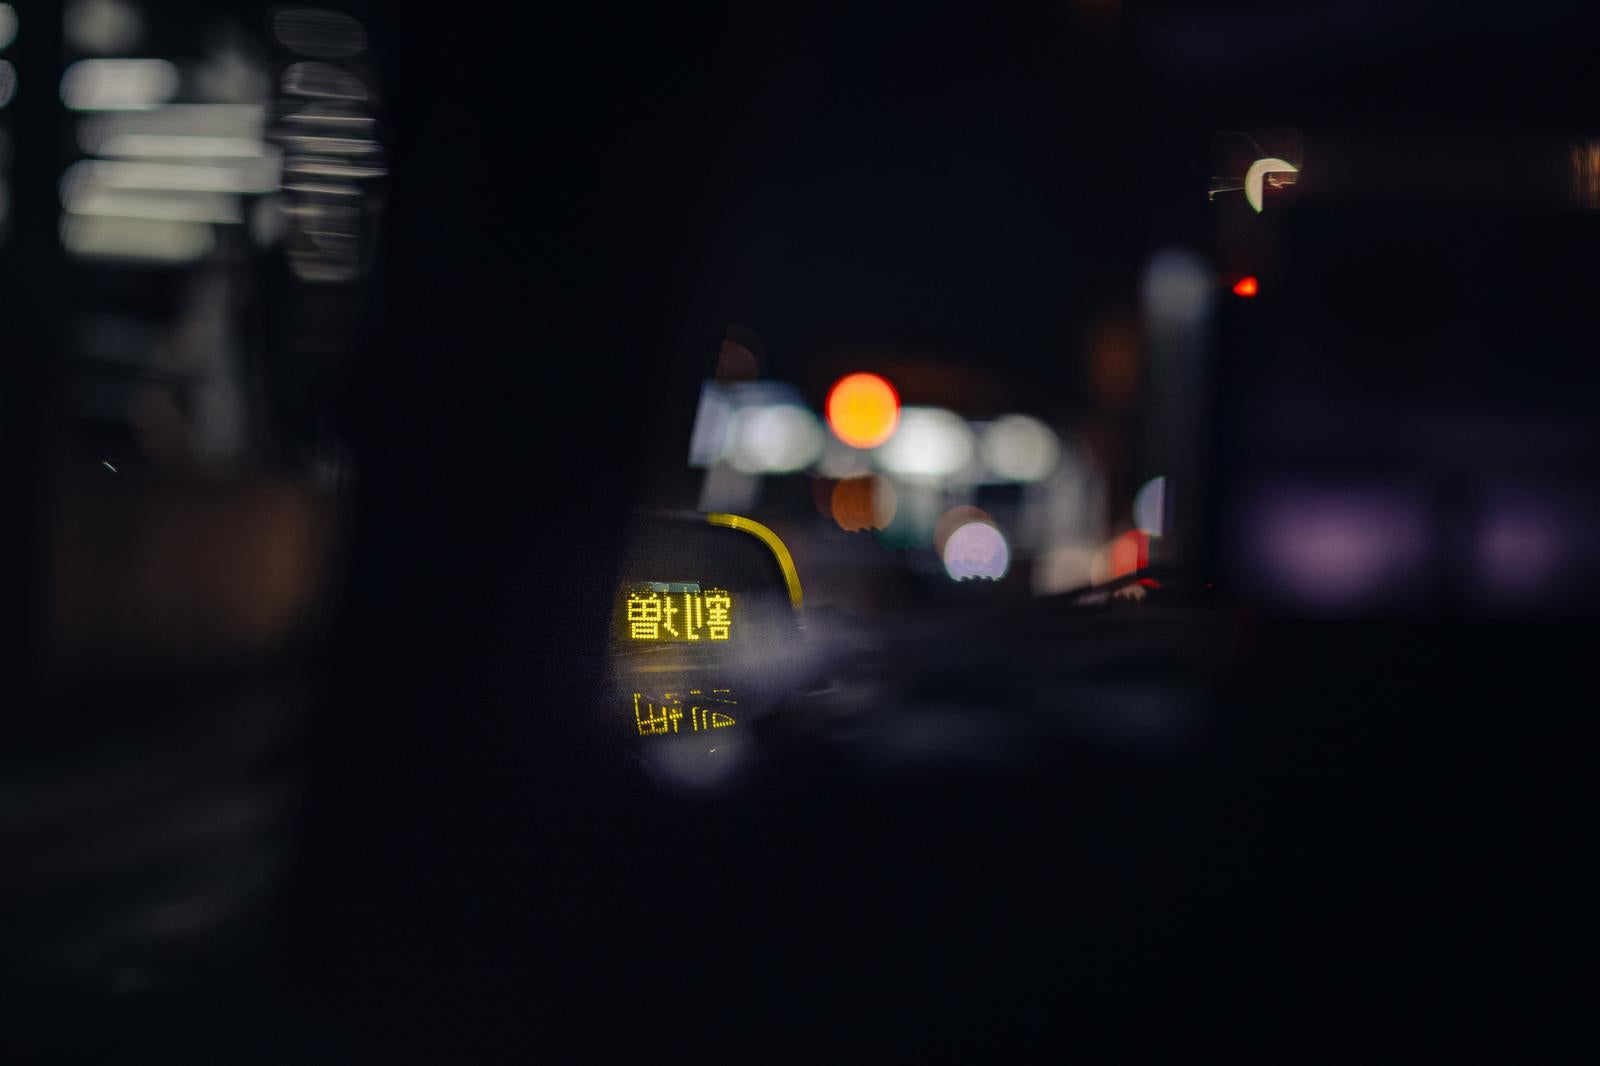 「タクシーの深夜帯割増運賃」の写真